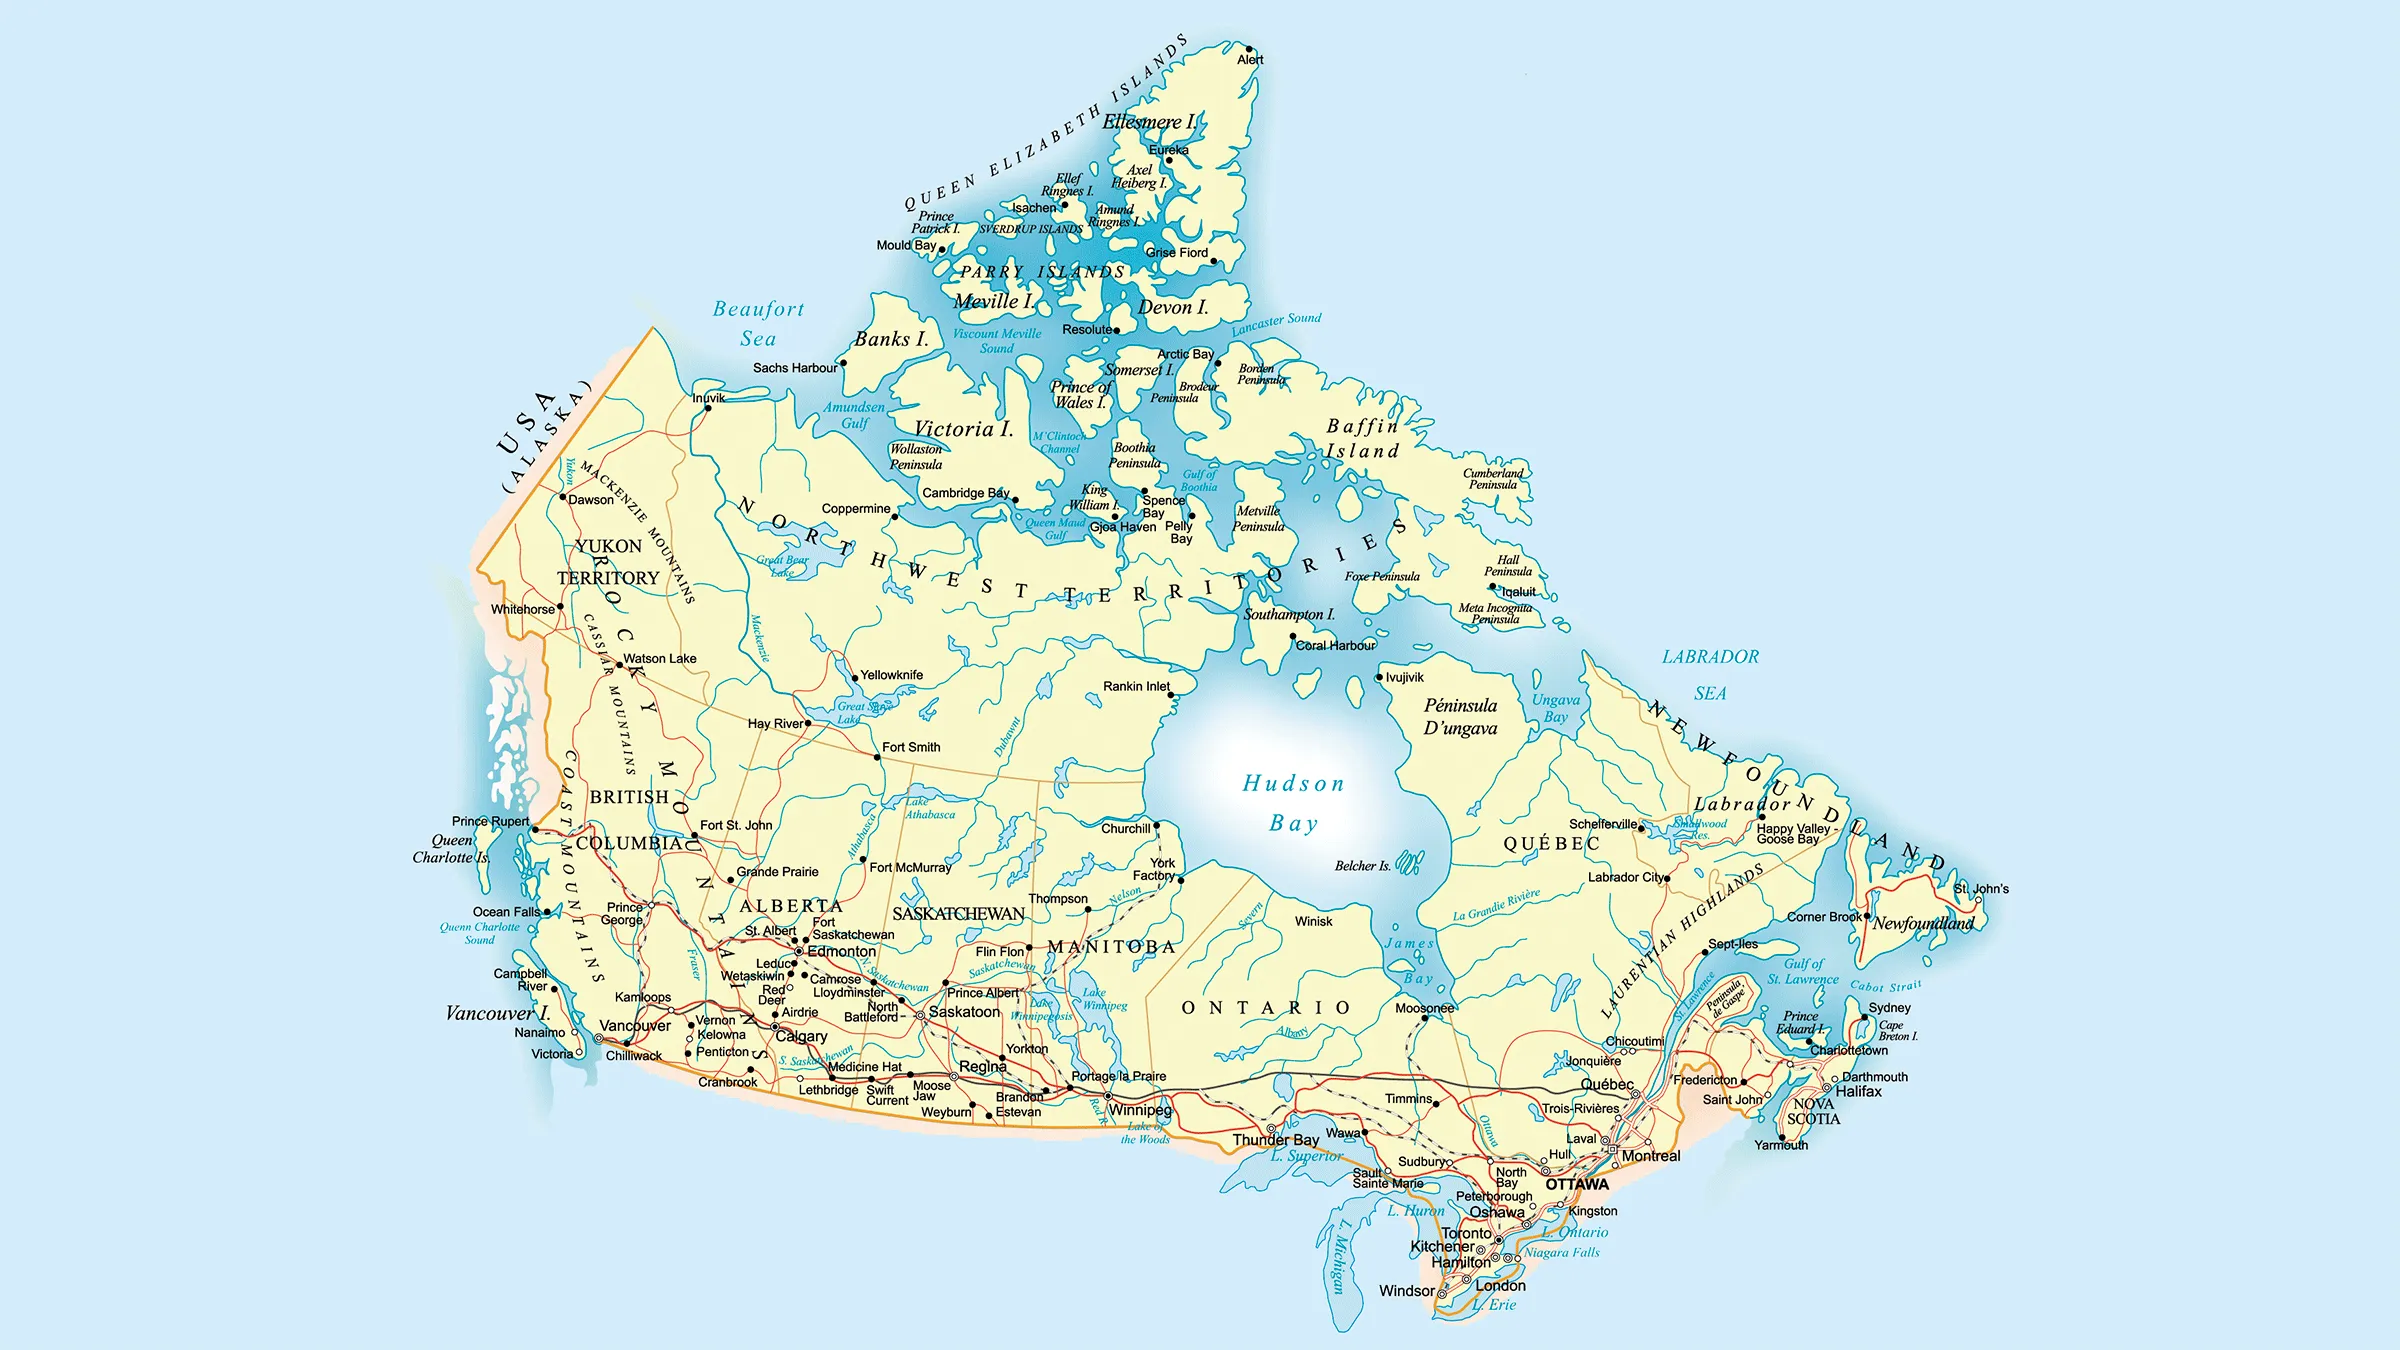 Croquis del mapa de canada - Imagui